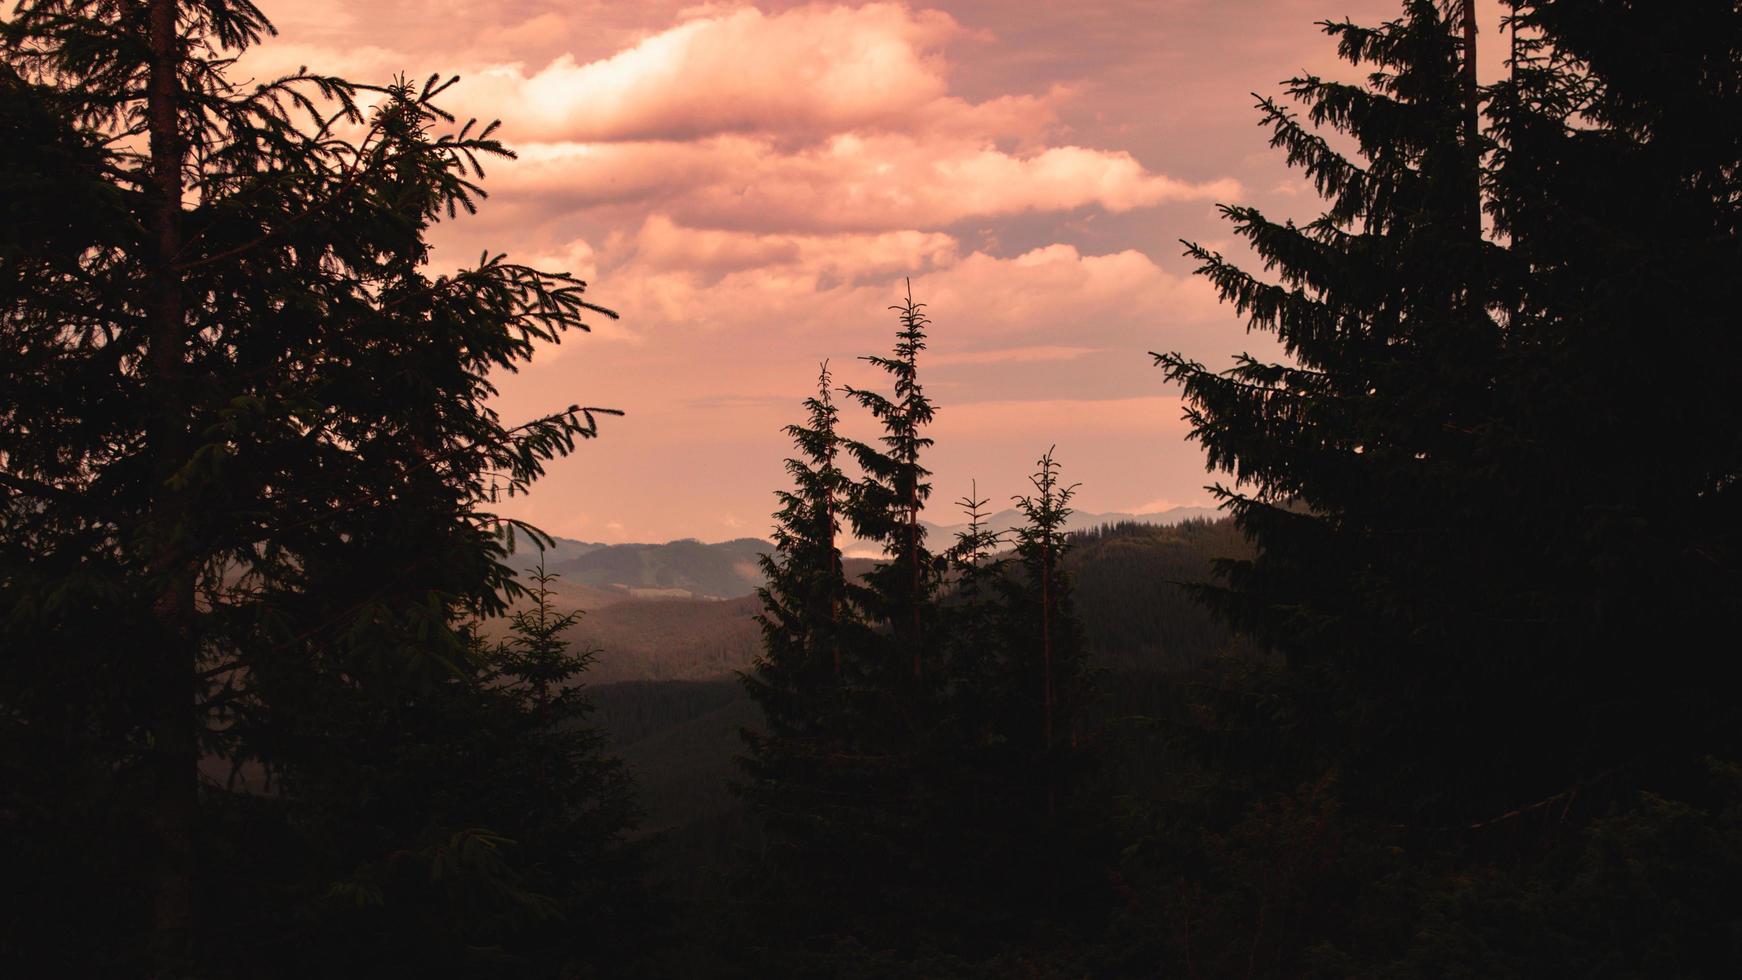 Panorama de las montañas de los Cárpatos de colinas verdes en la montaña de verano foto